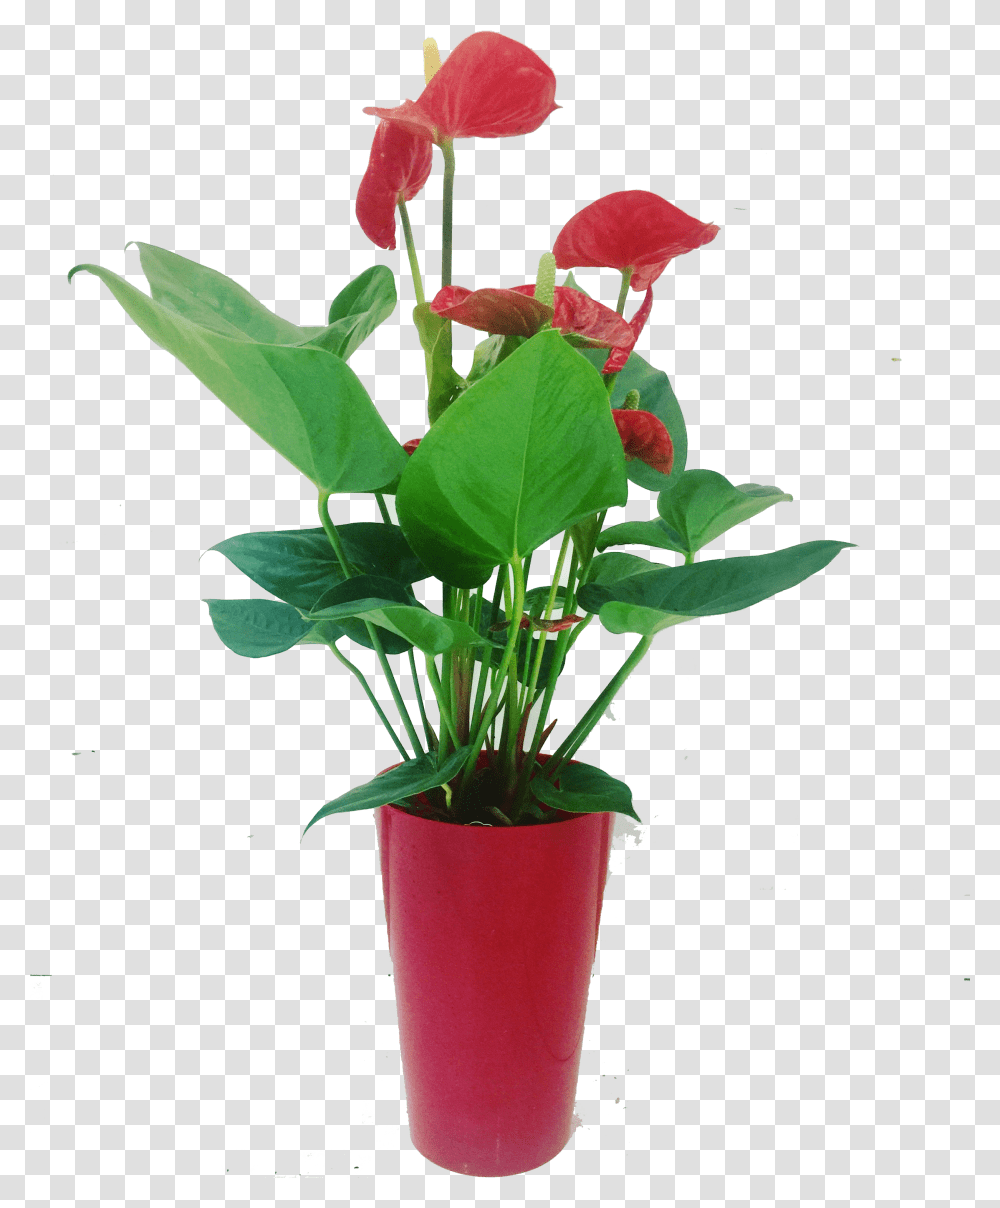 Download Flowerpot Full Size Image Pngkit Flowerpot, Plant, Blossom, Anthurium, Flower Arrangement Transparent Png